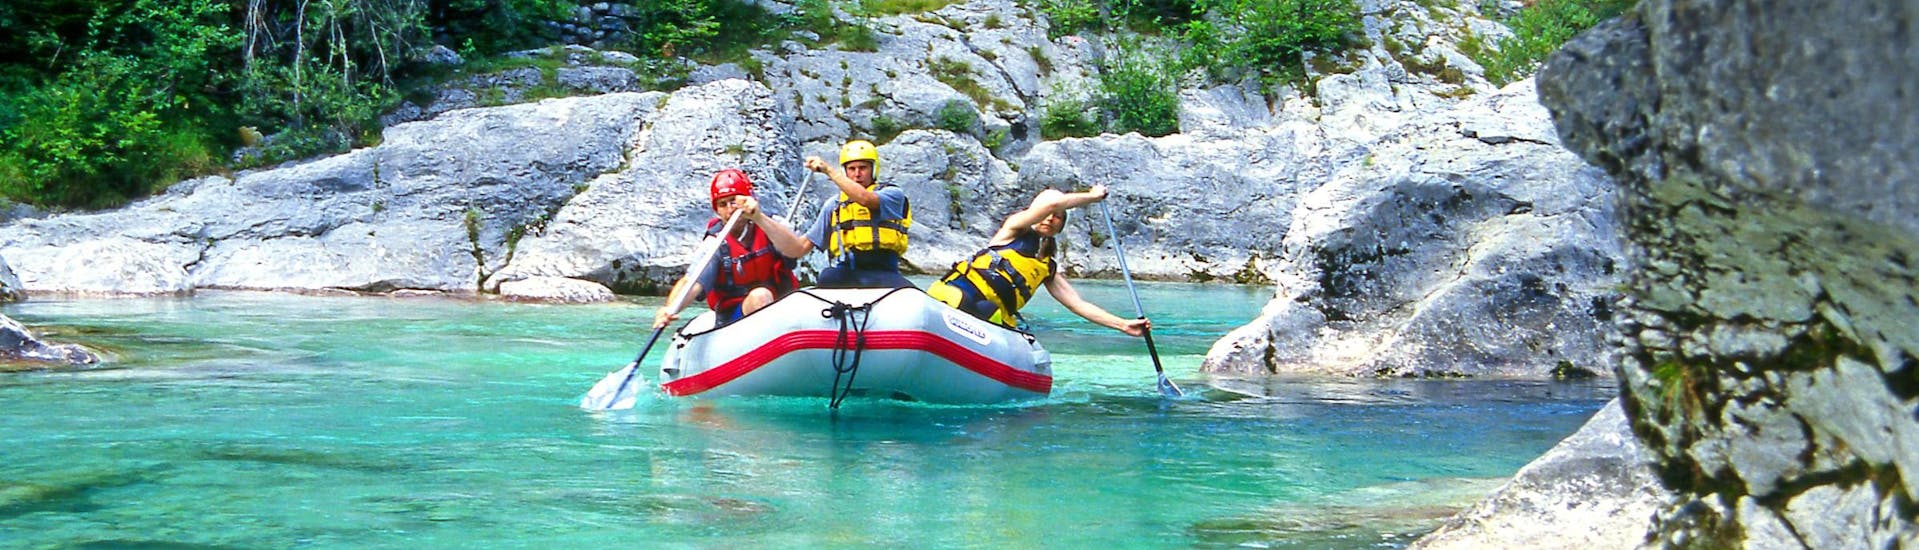 Sušec: Een groep jongeren geniet van een wildwateravontuur in een van de hotspots voor rafting en canyoning.